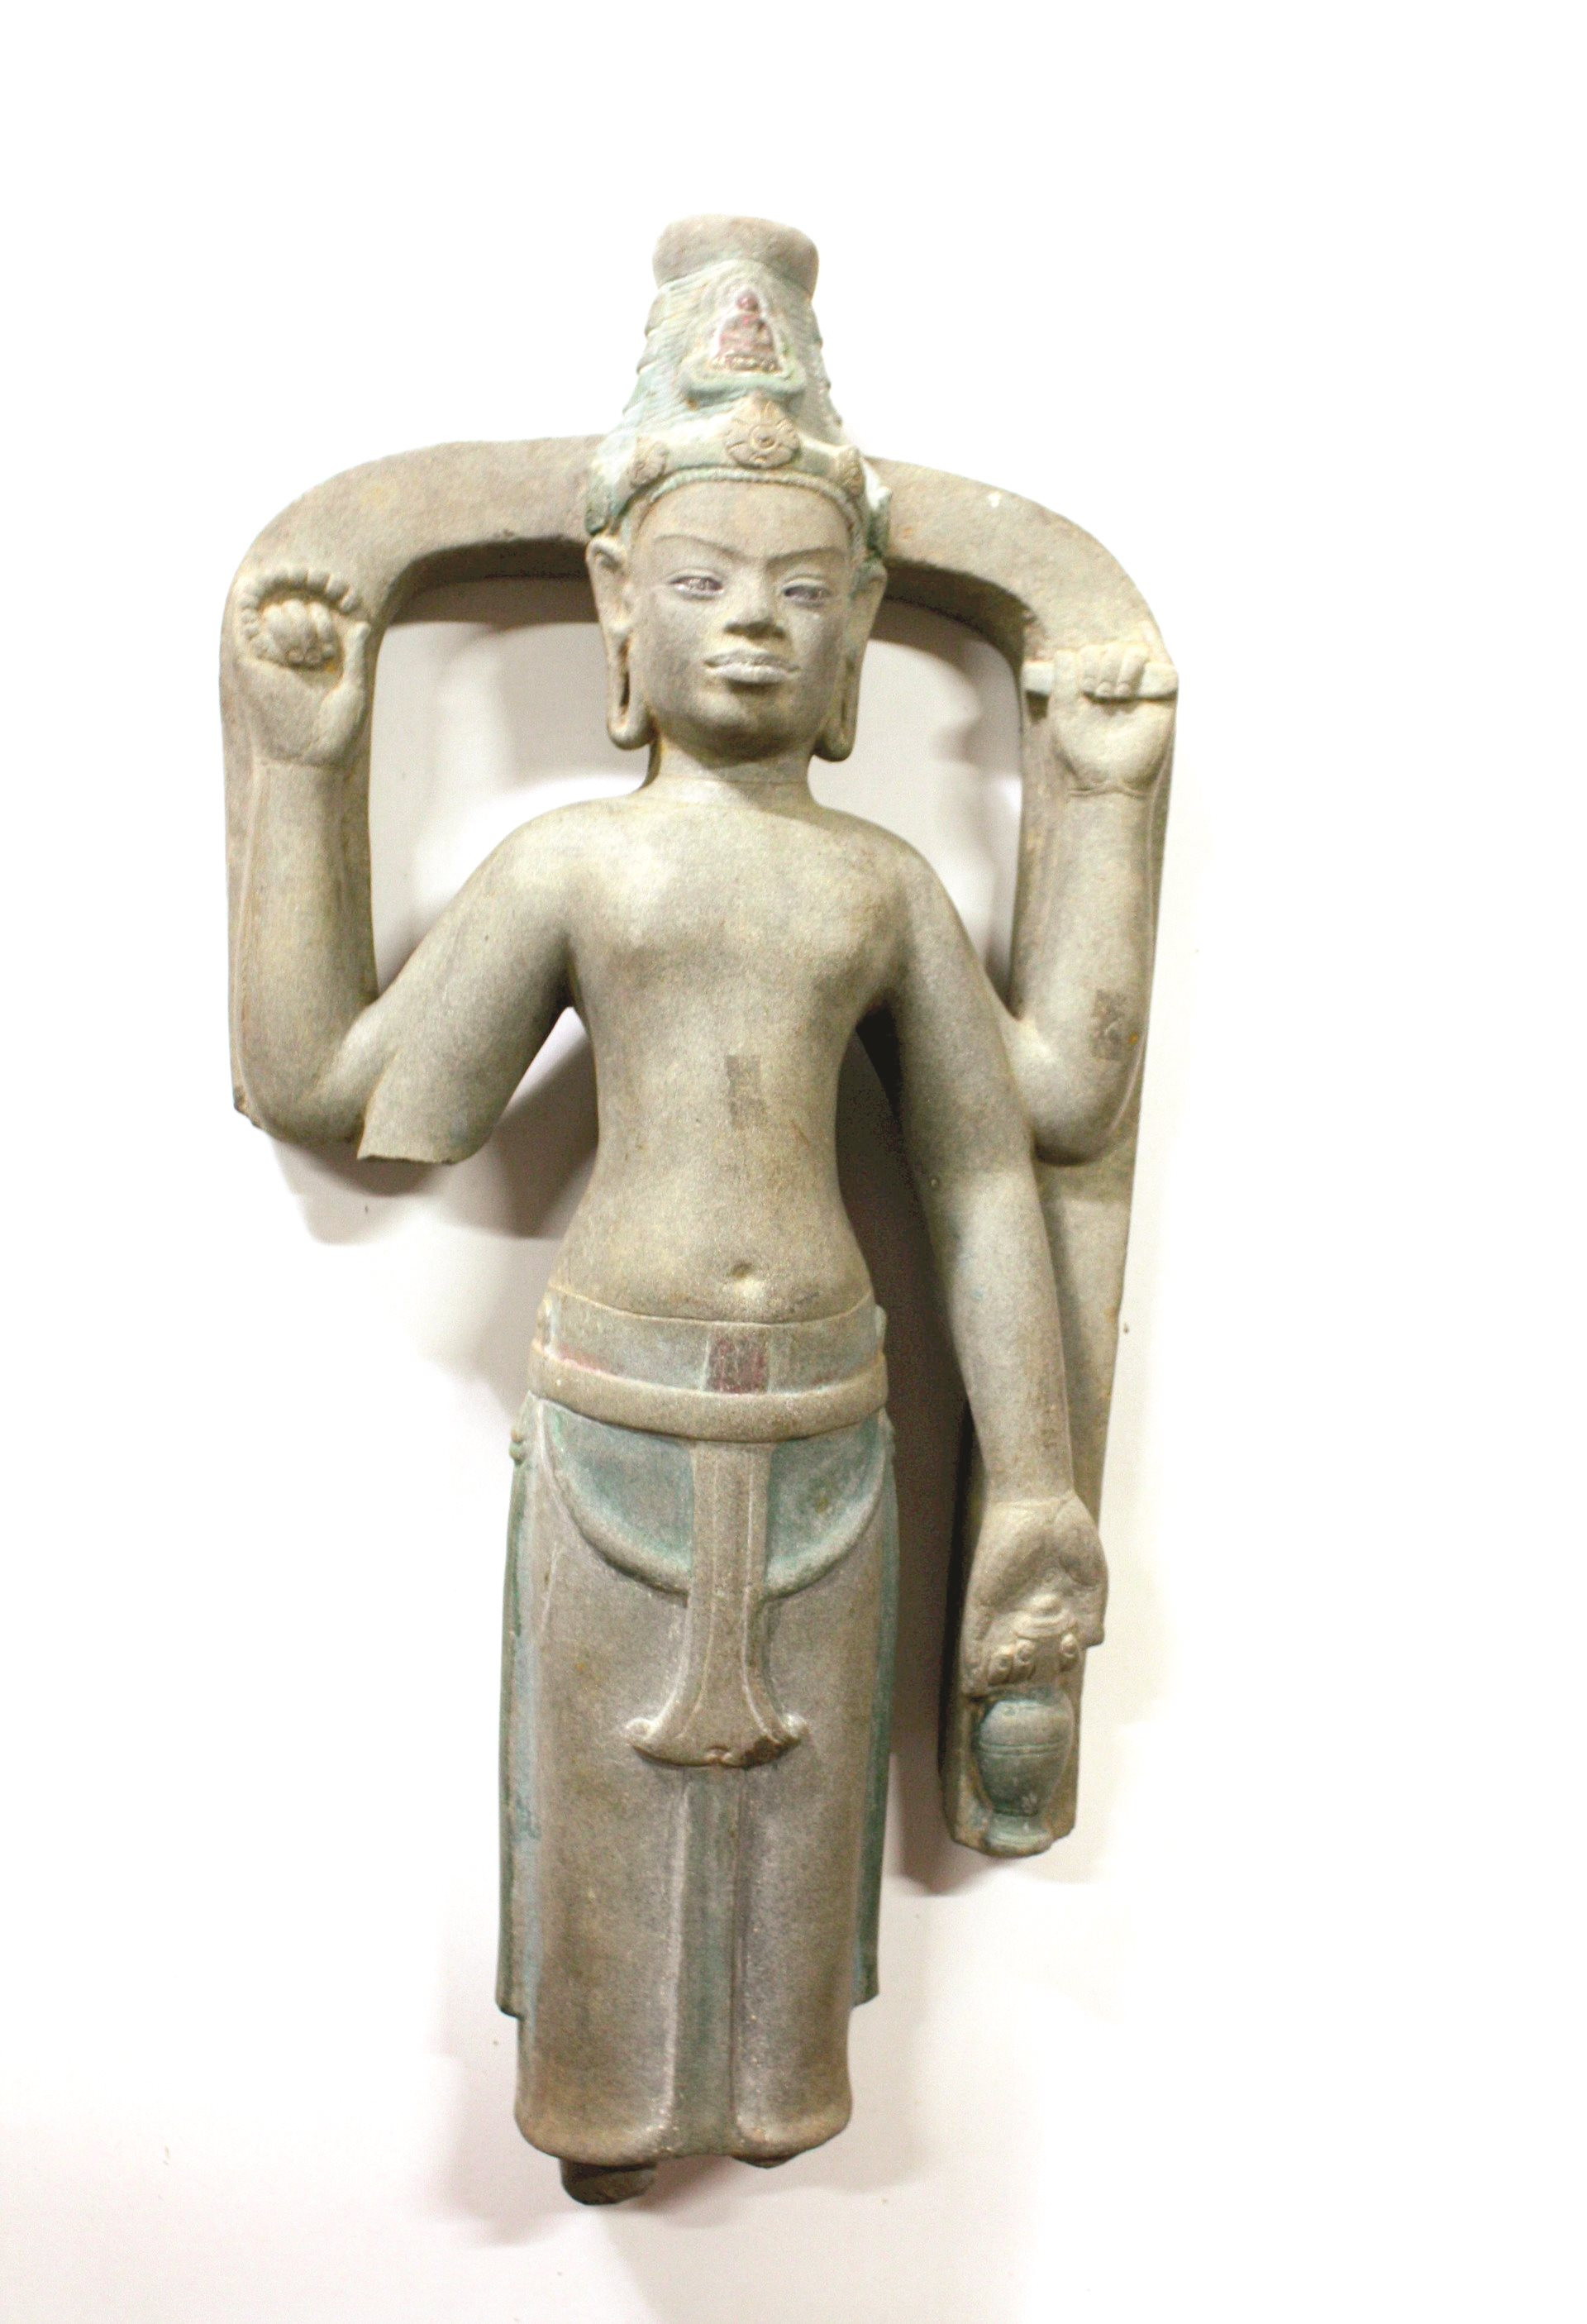 Tình cờ phát lộ tượng Champa cổ cách đây 22 năm ở một thôn của Bình Thuận, nay là báu vật hiếm có - Ảnh 1.